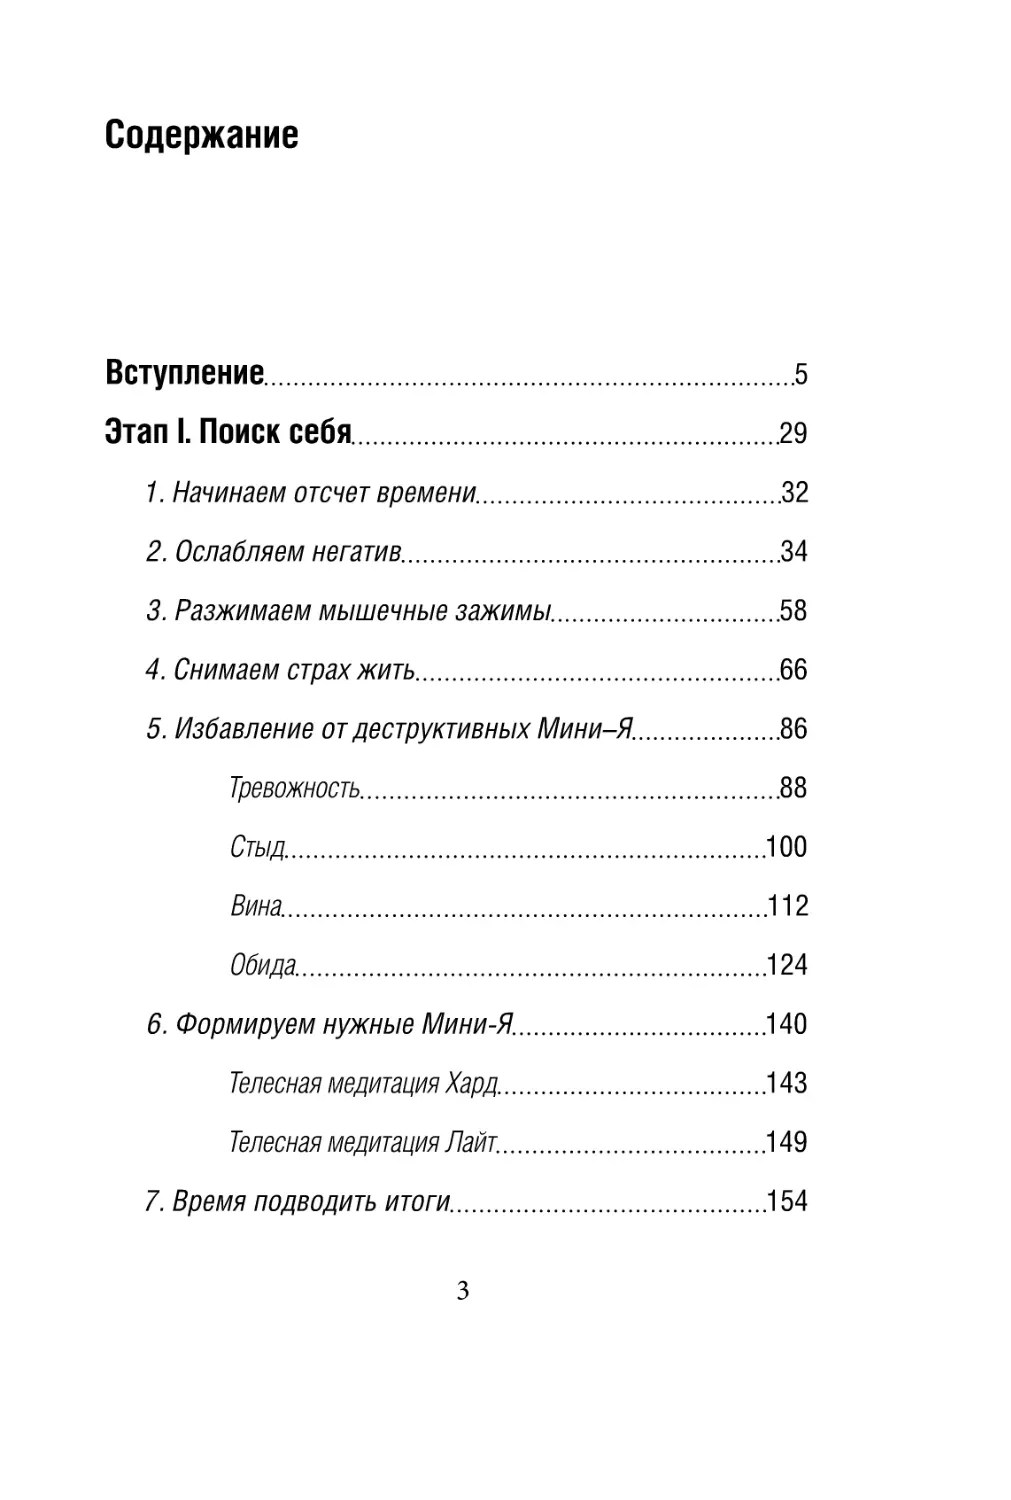 Sergey_Filippov_Dnevnik_samorazvitia_Evolyutsia_Vnutrennego_Sostoyania_3.pdf (p.3)